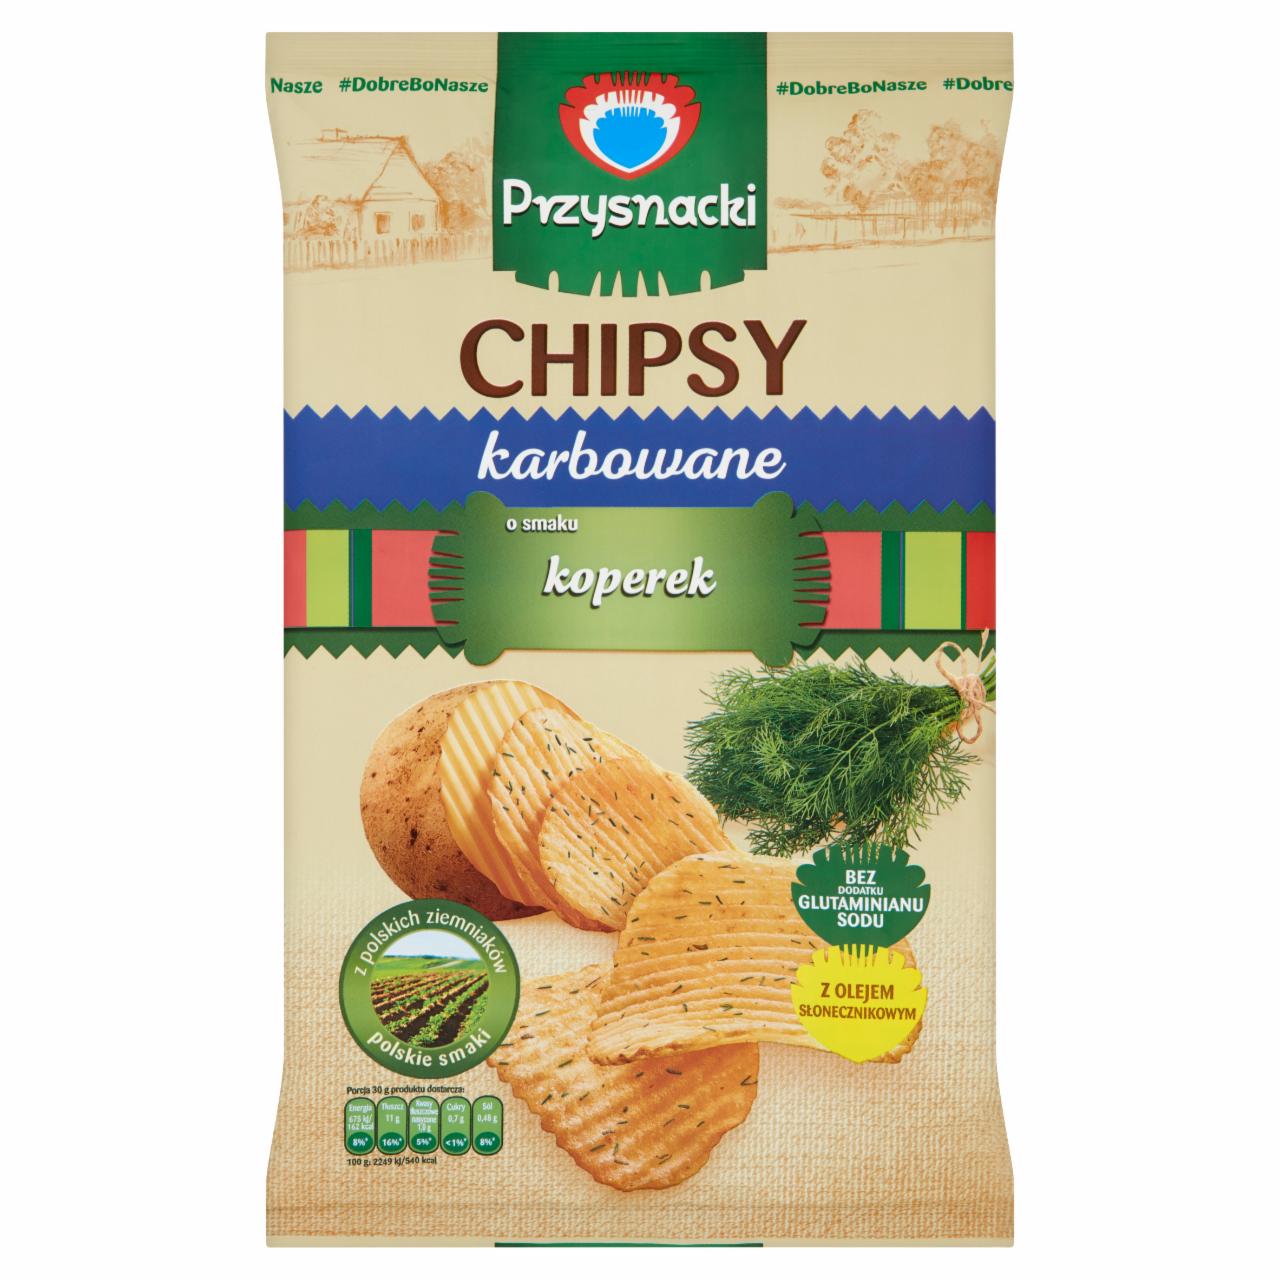 Zdjęcia - Przysnacki Chipsy karbowane o smaku koperek 135 g